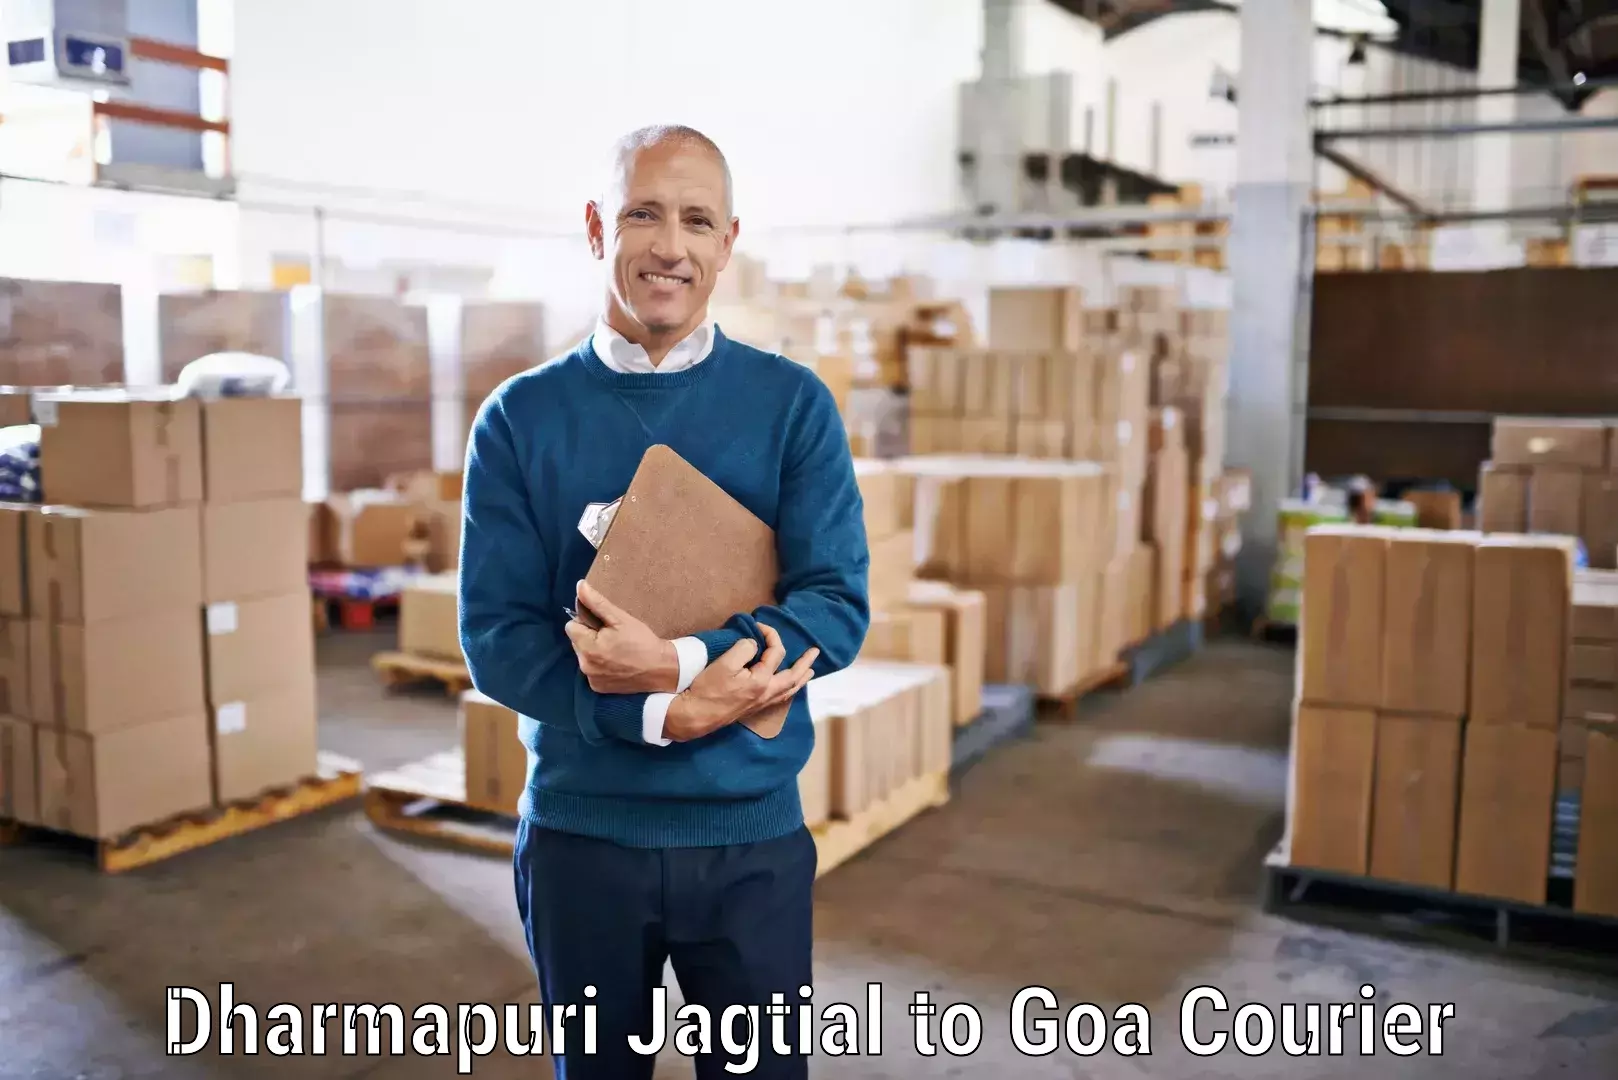 Custom courier packages Dharmapuri Jagtial to Panaji